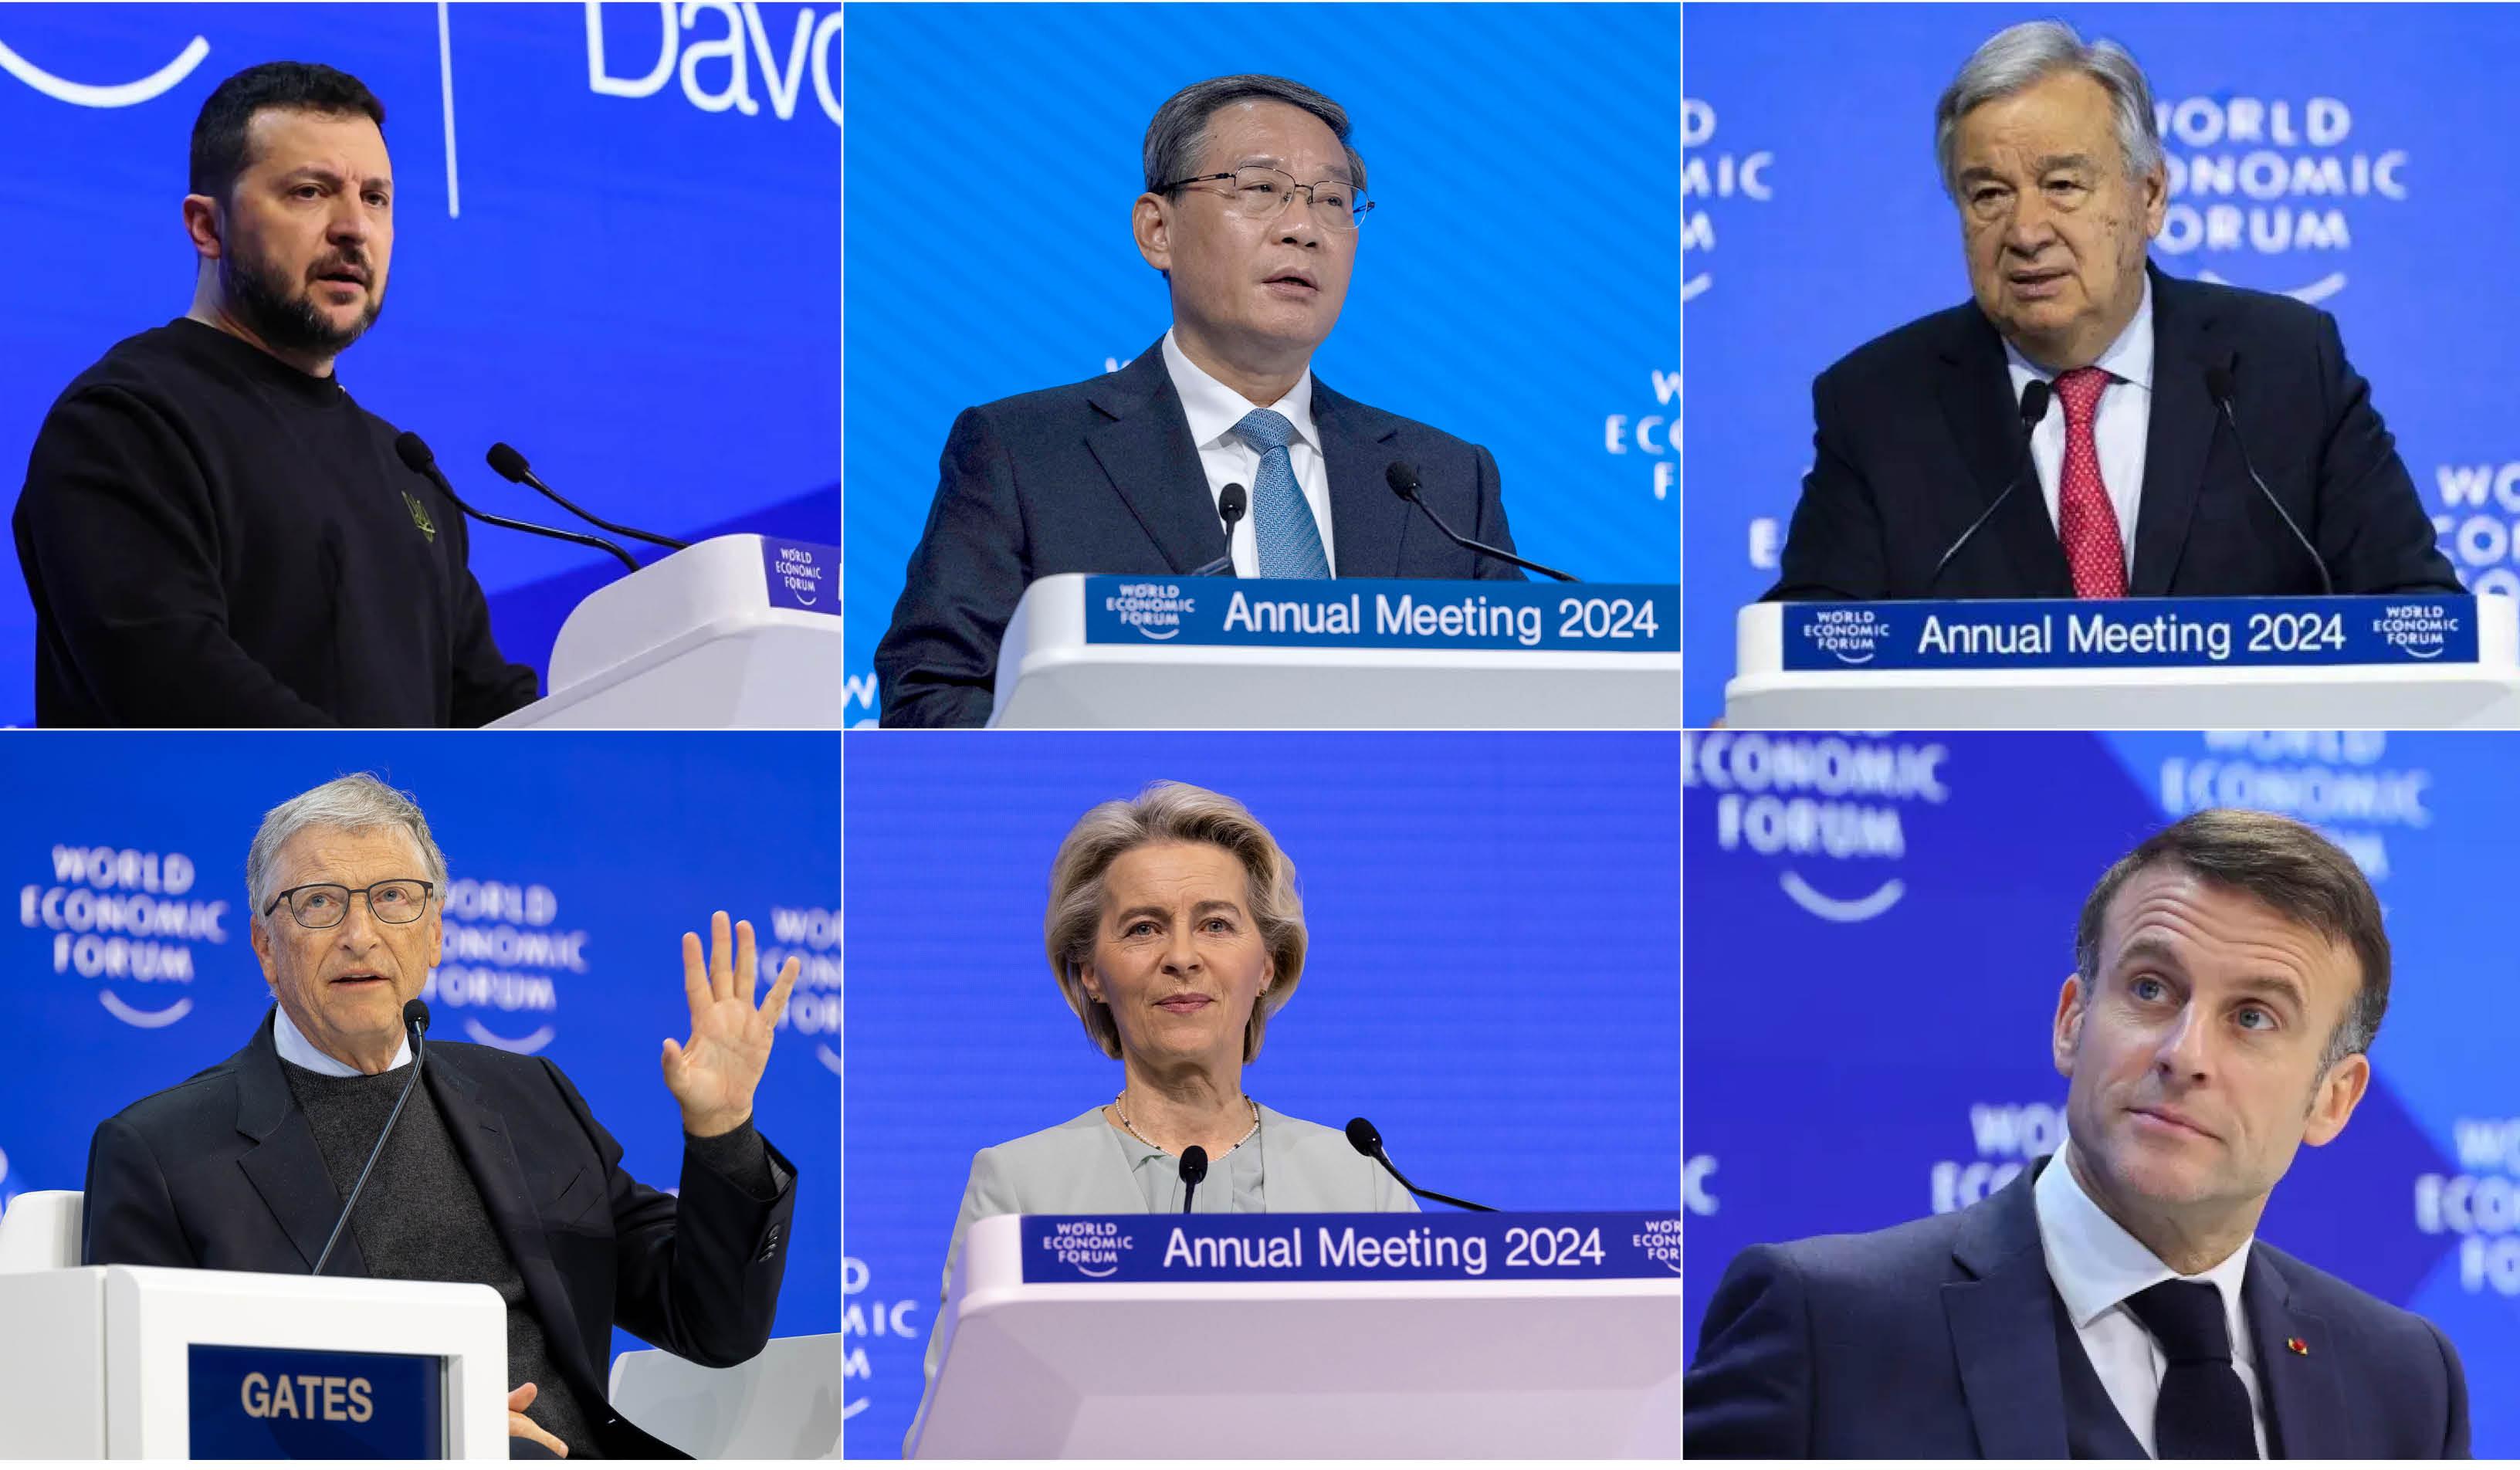 Pesan dari Davos: Pentingnya Memulihkan Kepercayaan (Bagian 1)